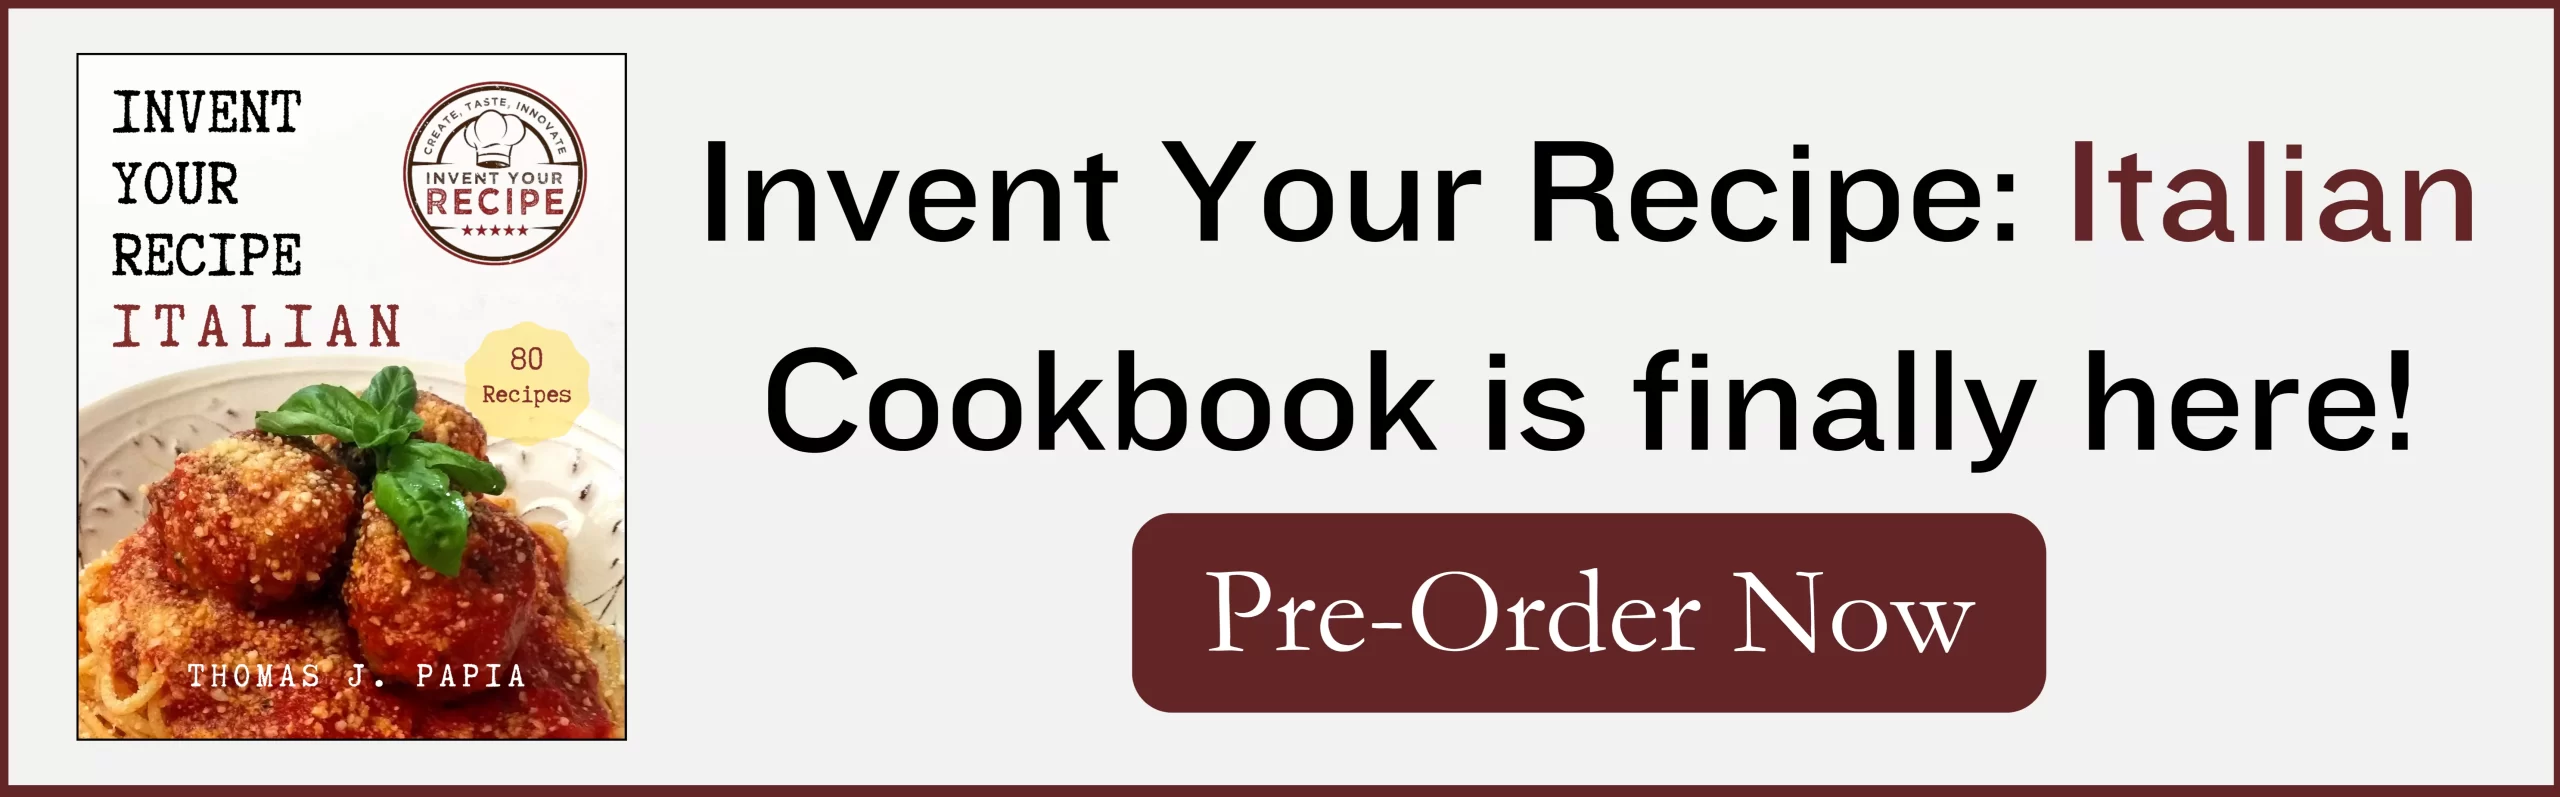 Invent Your Recipe Italian Cookbook: Order The Cookbook Now